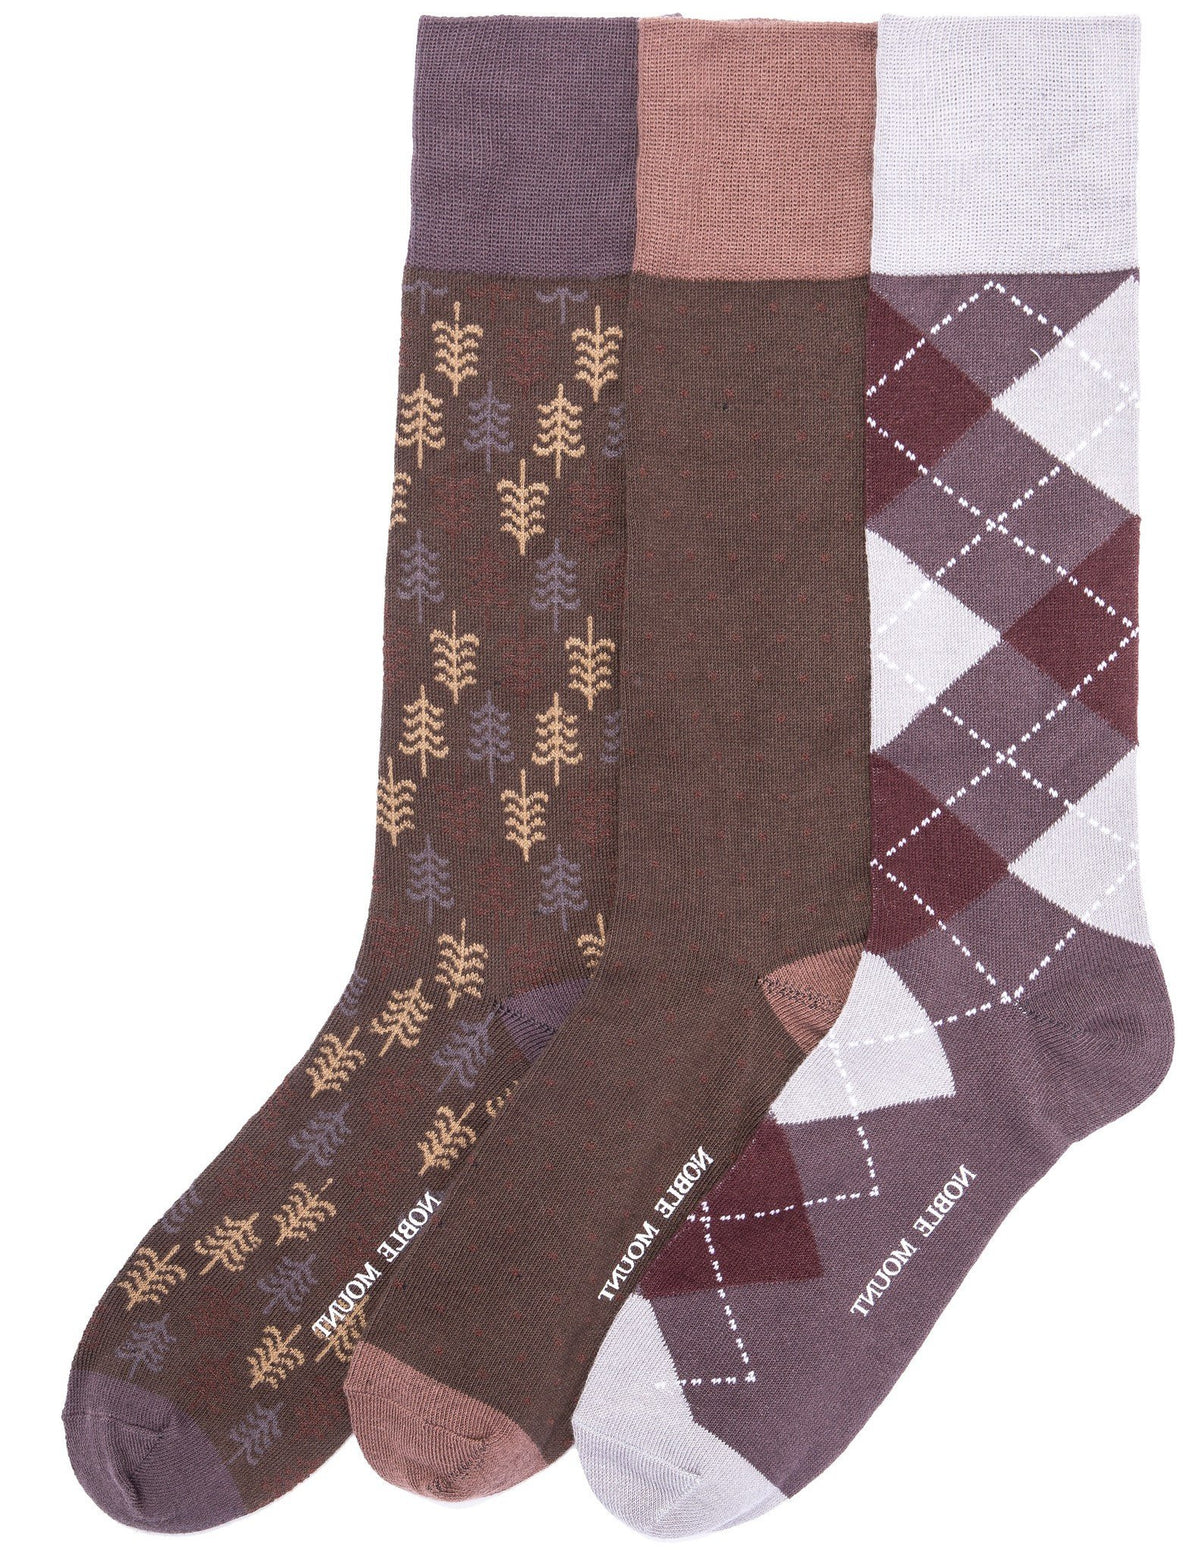 Men's Combed Cotton Dress Socks 3-Pack - Set C6